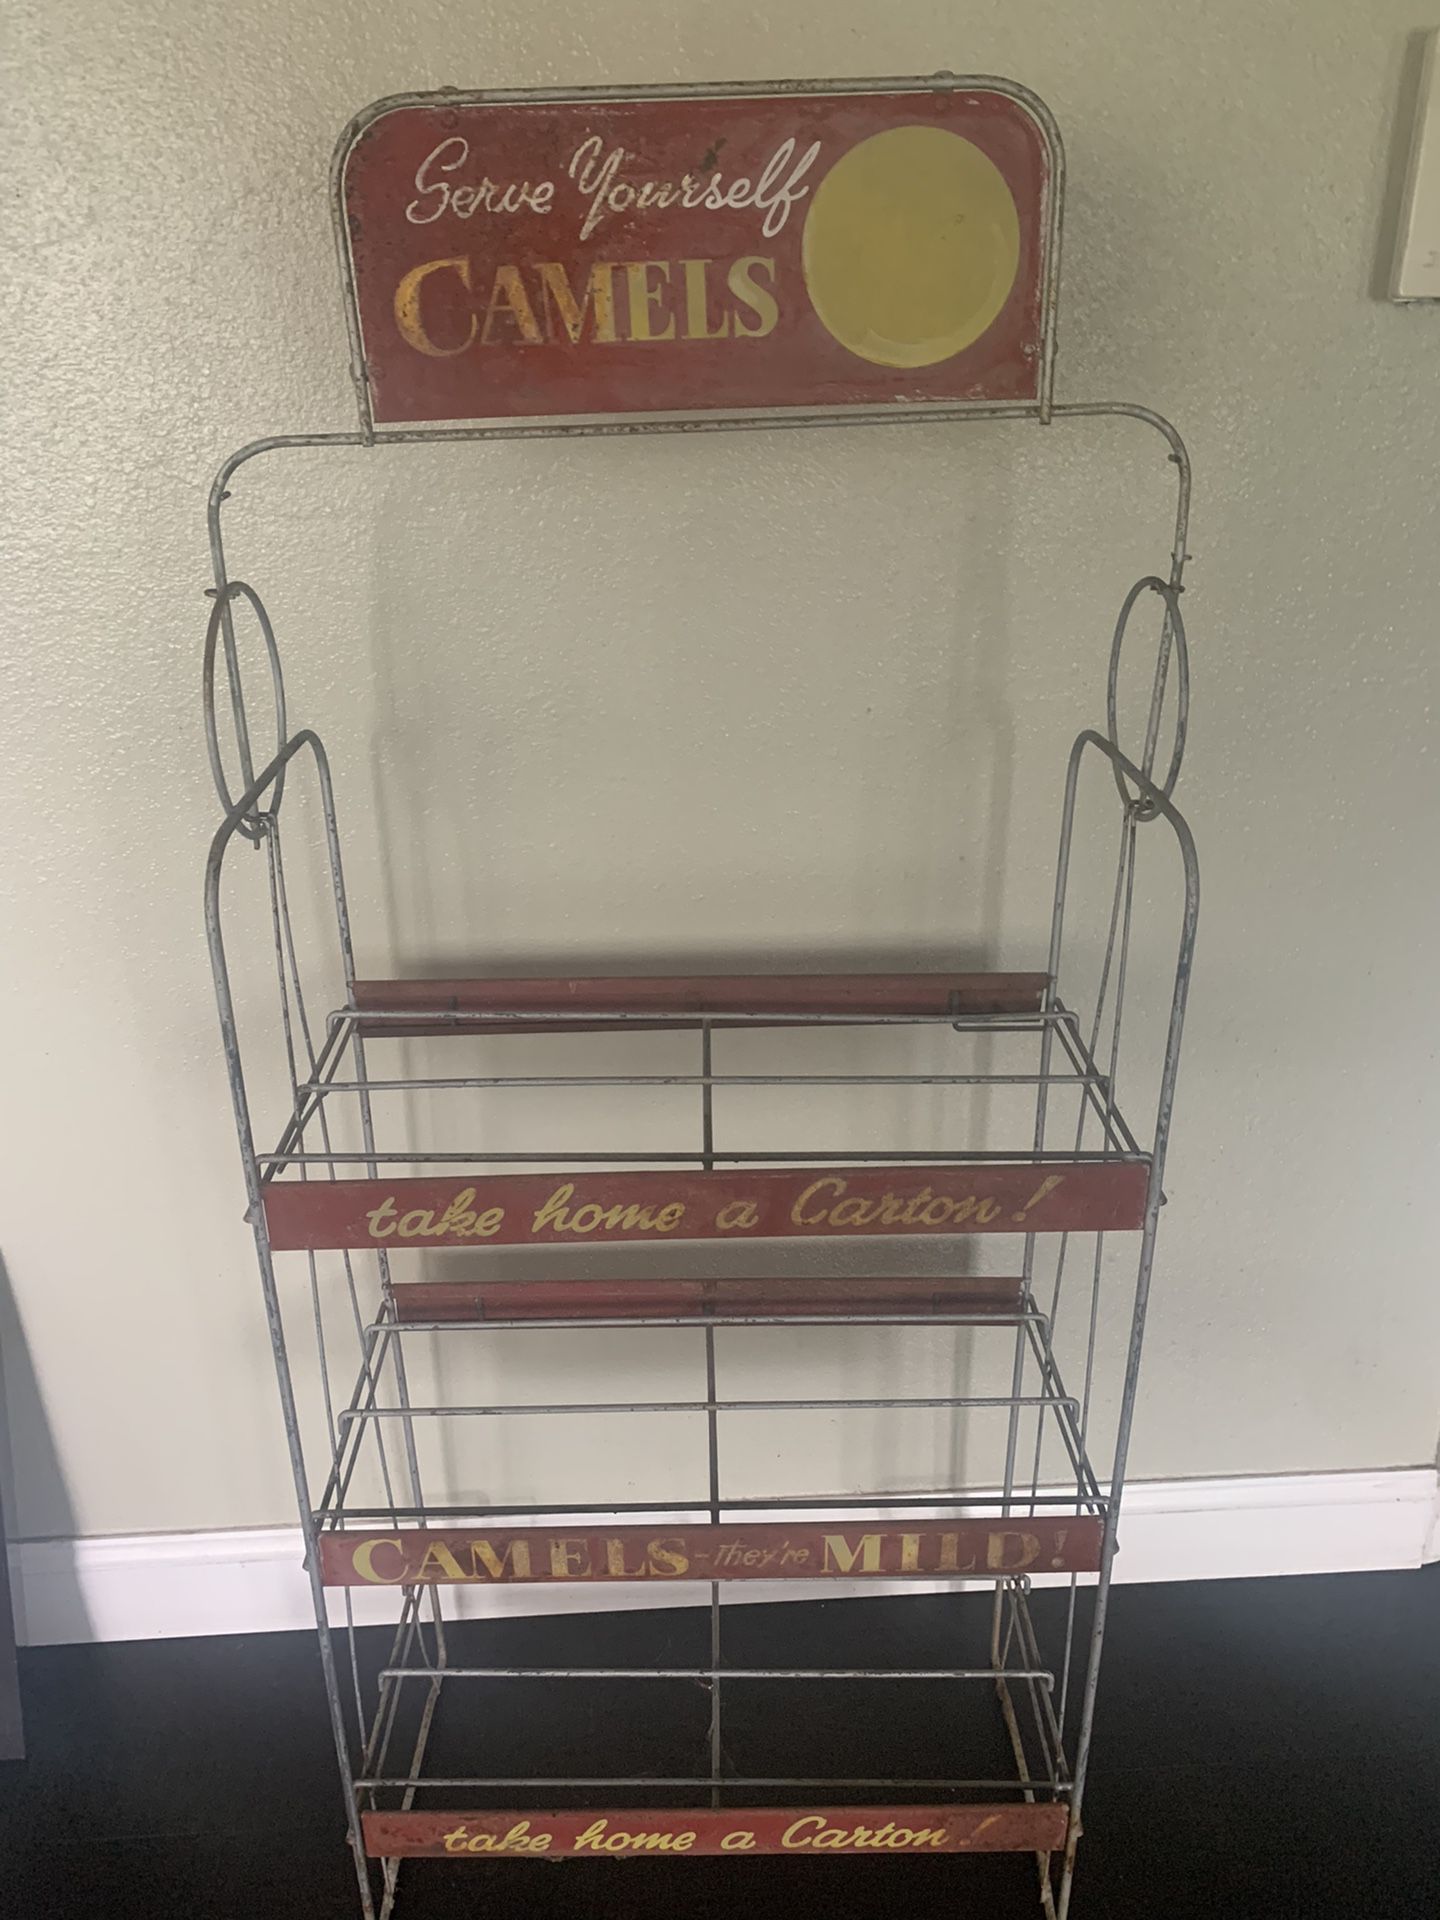 Vintage Camel Cigarettes Rack Display